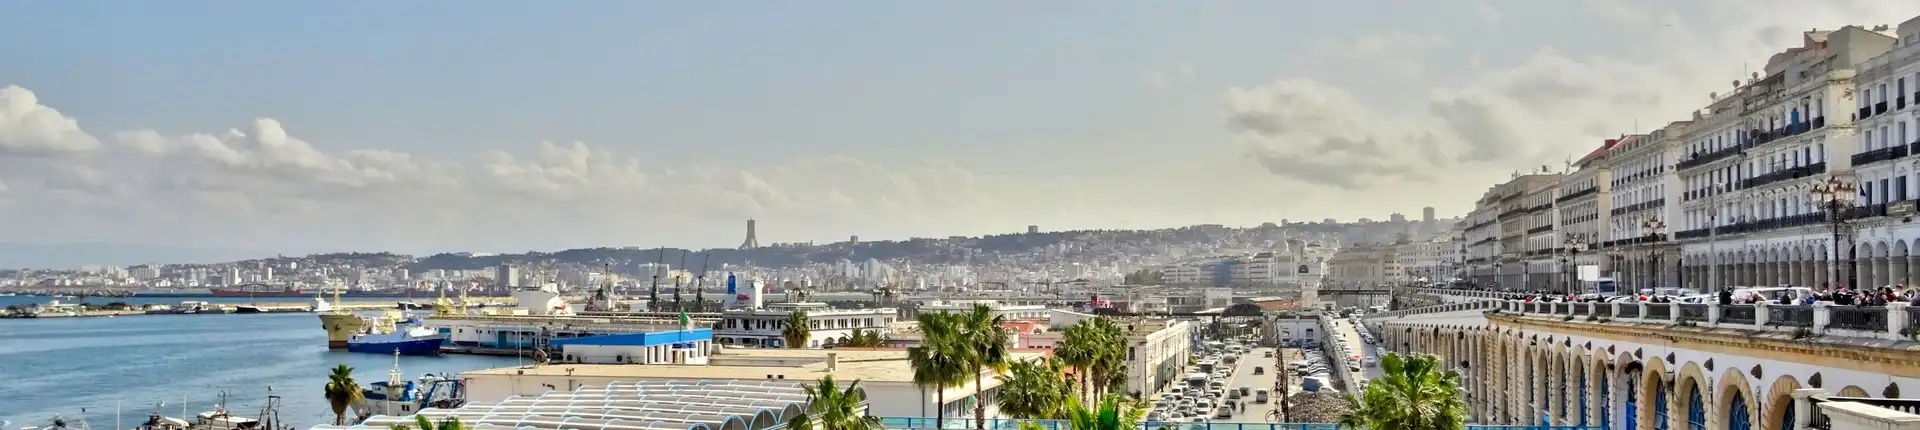 افضل 15 من اماكن سياحية في الجزائر العاصمة